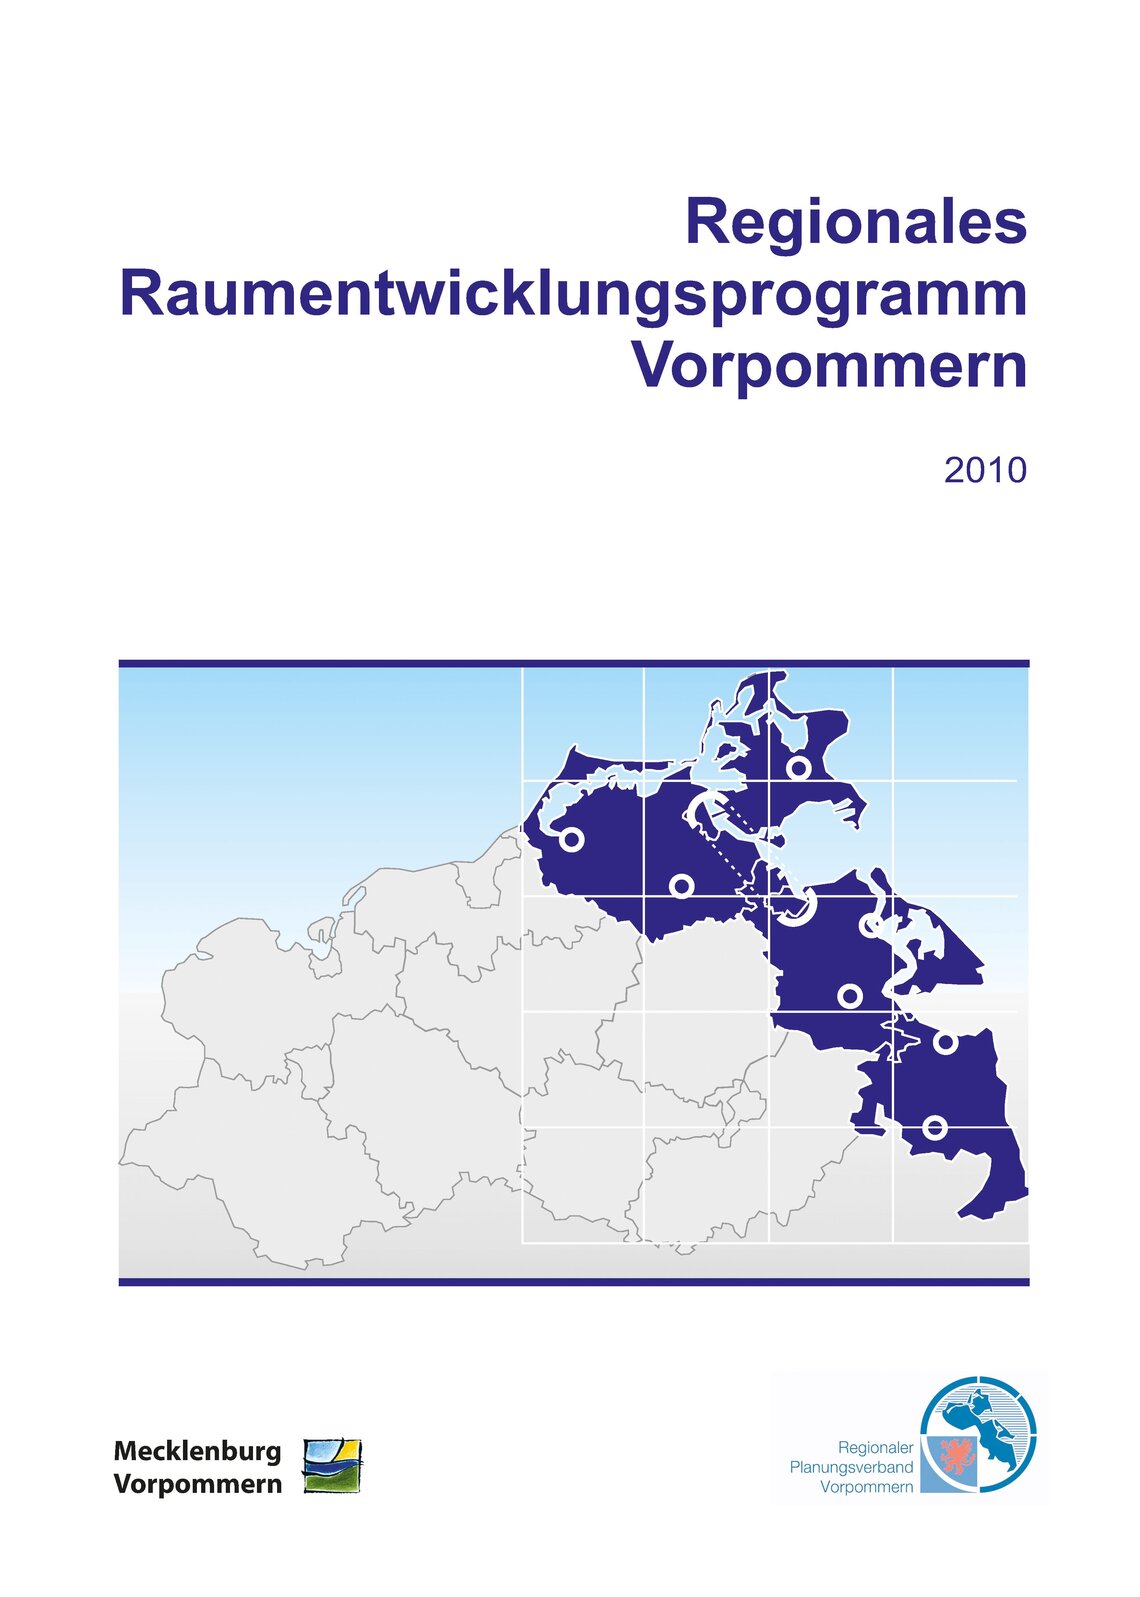 Regionales Raumentwicklungsprogramm Vorpommern